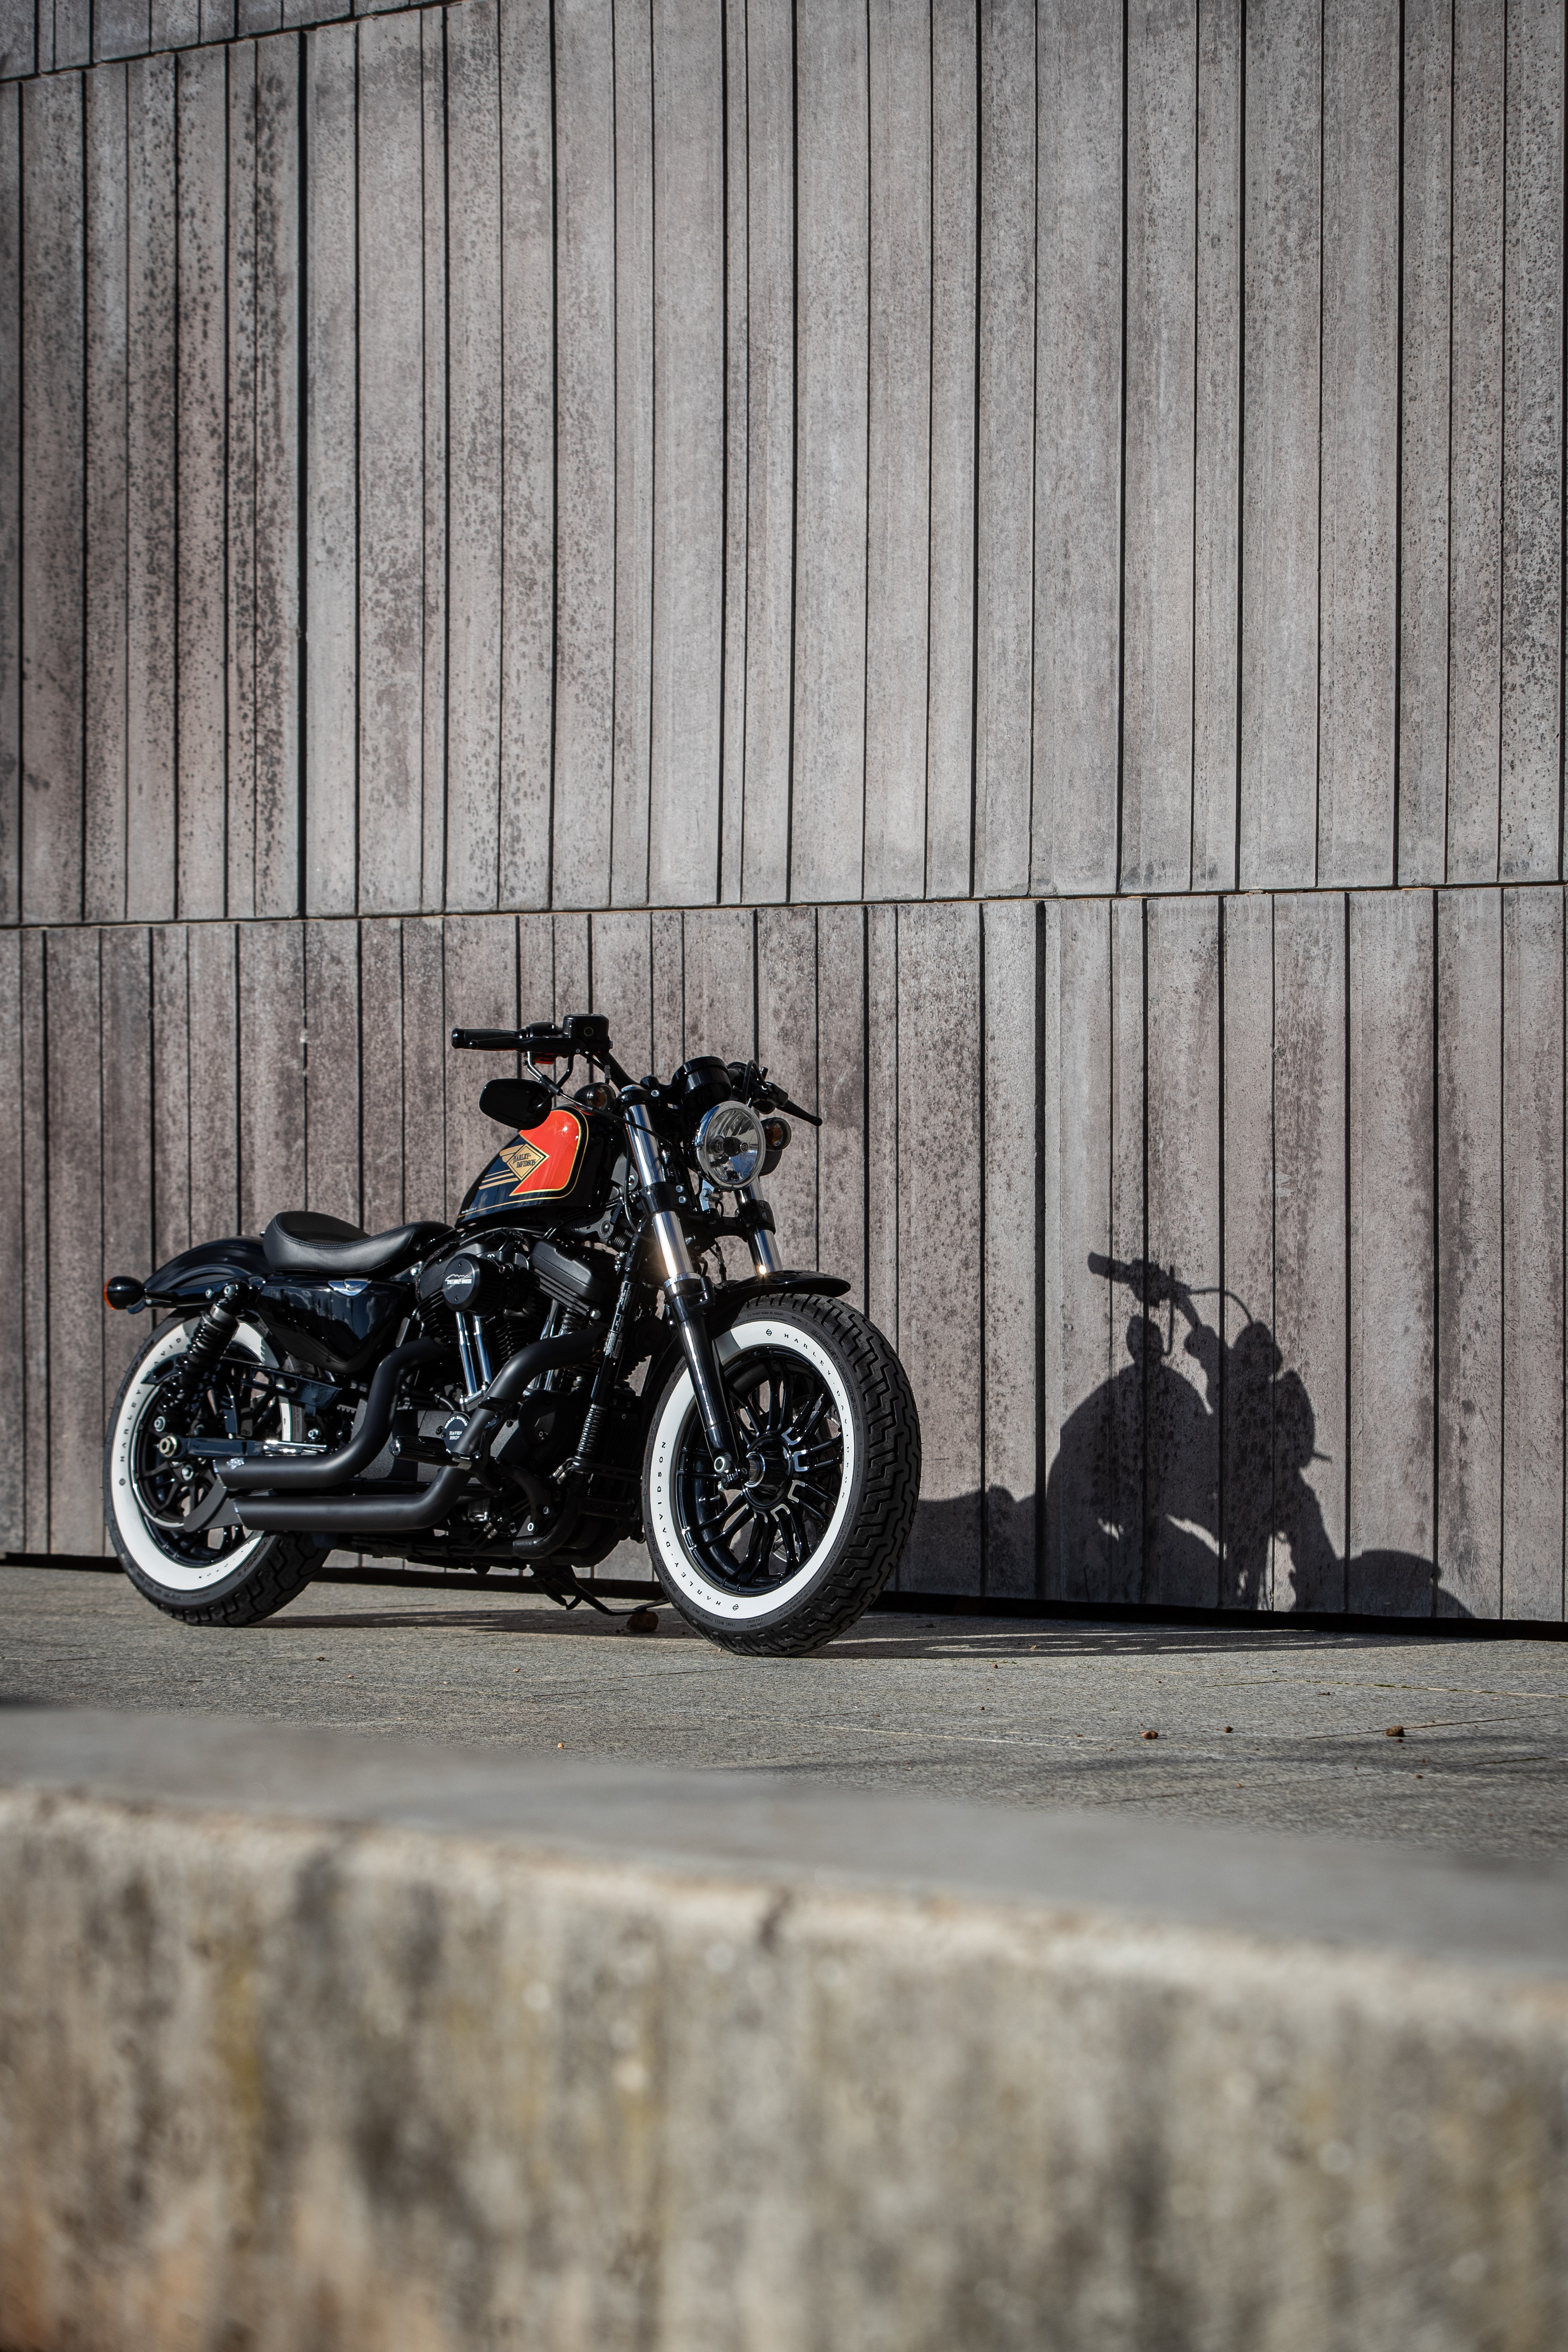 Ngam dan xe Harley-Davidson Sportster lot xac voi ban do Sykes hinh anh 13 2020_Harley_Davidson_Sportster_Custom_5217.jpg